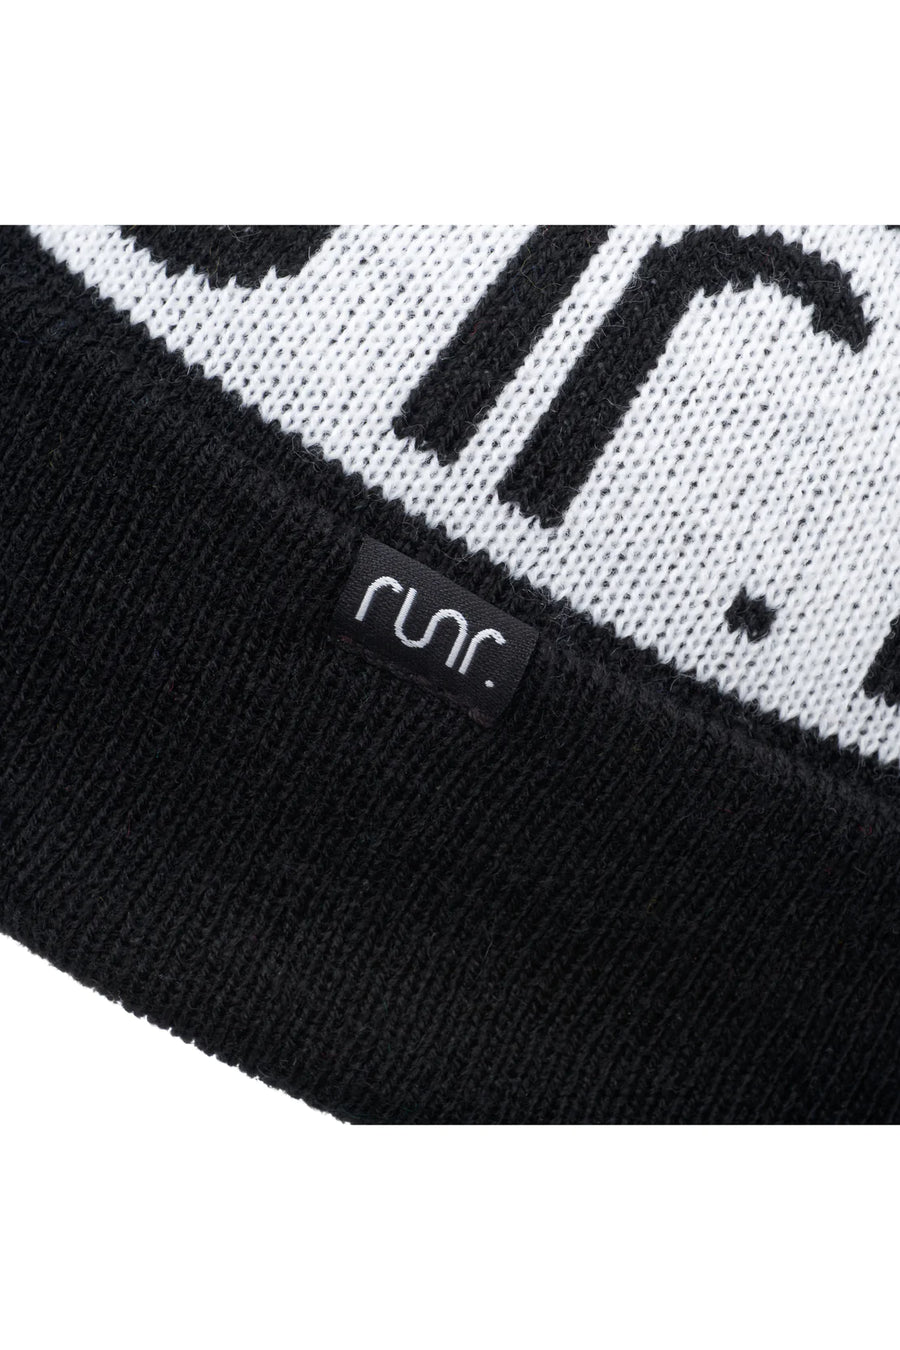 Runr Nordic Bobble Hat | Black/White